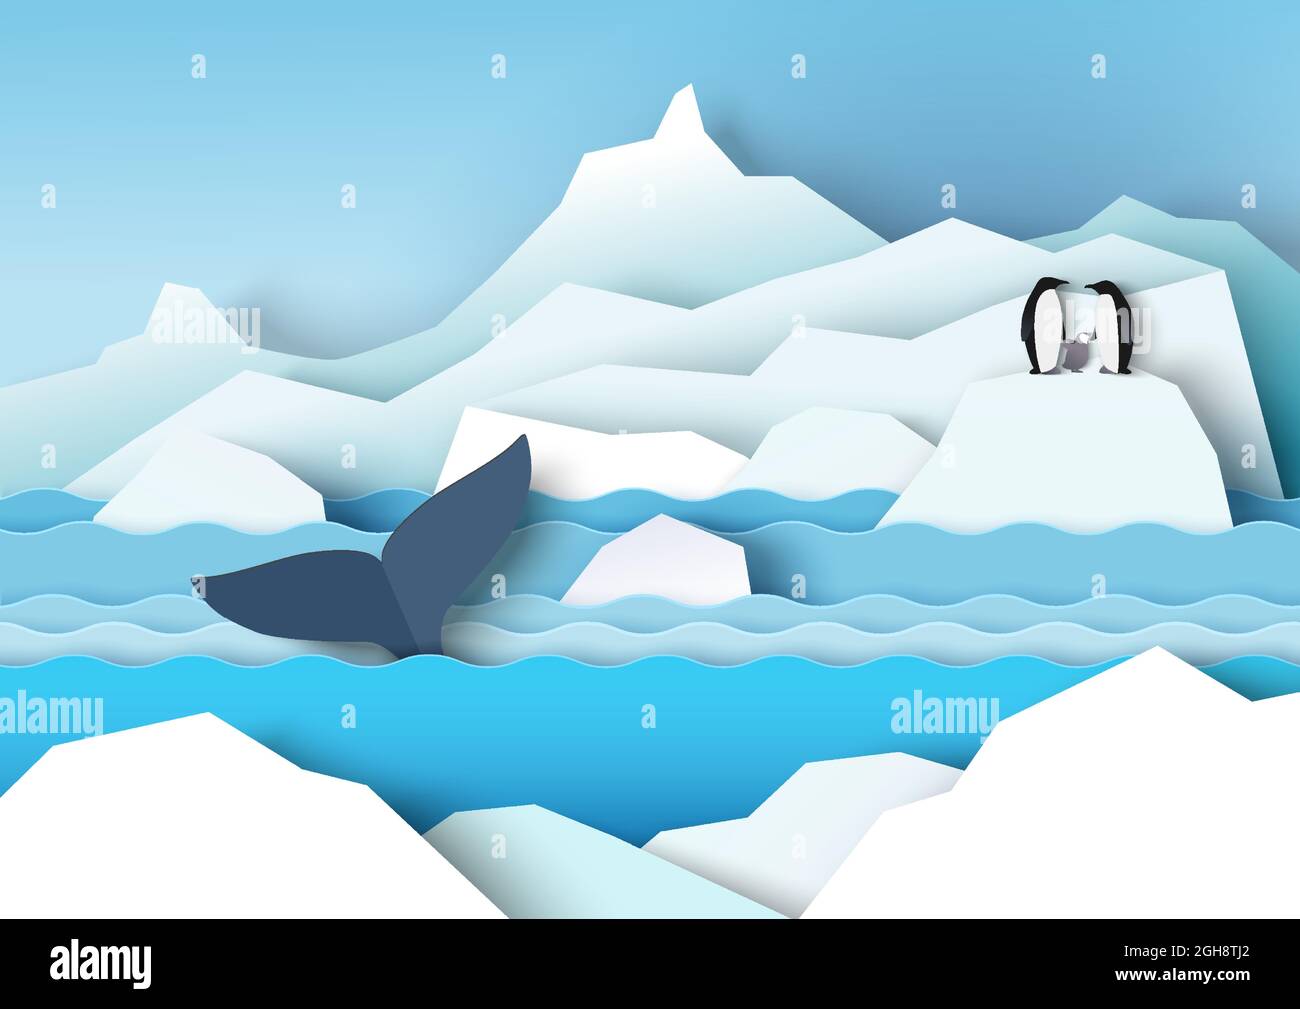 Paysages antarctiques avec glaciers, icebergs, famille de pingouins et baleine, illustration vectorielle de la coupe de papier. La faune de l'Antarctique Illustration de Vecteur